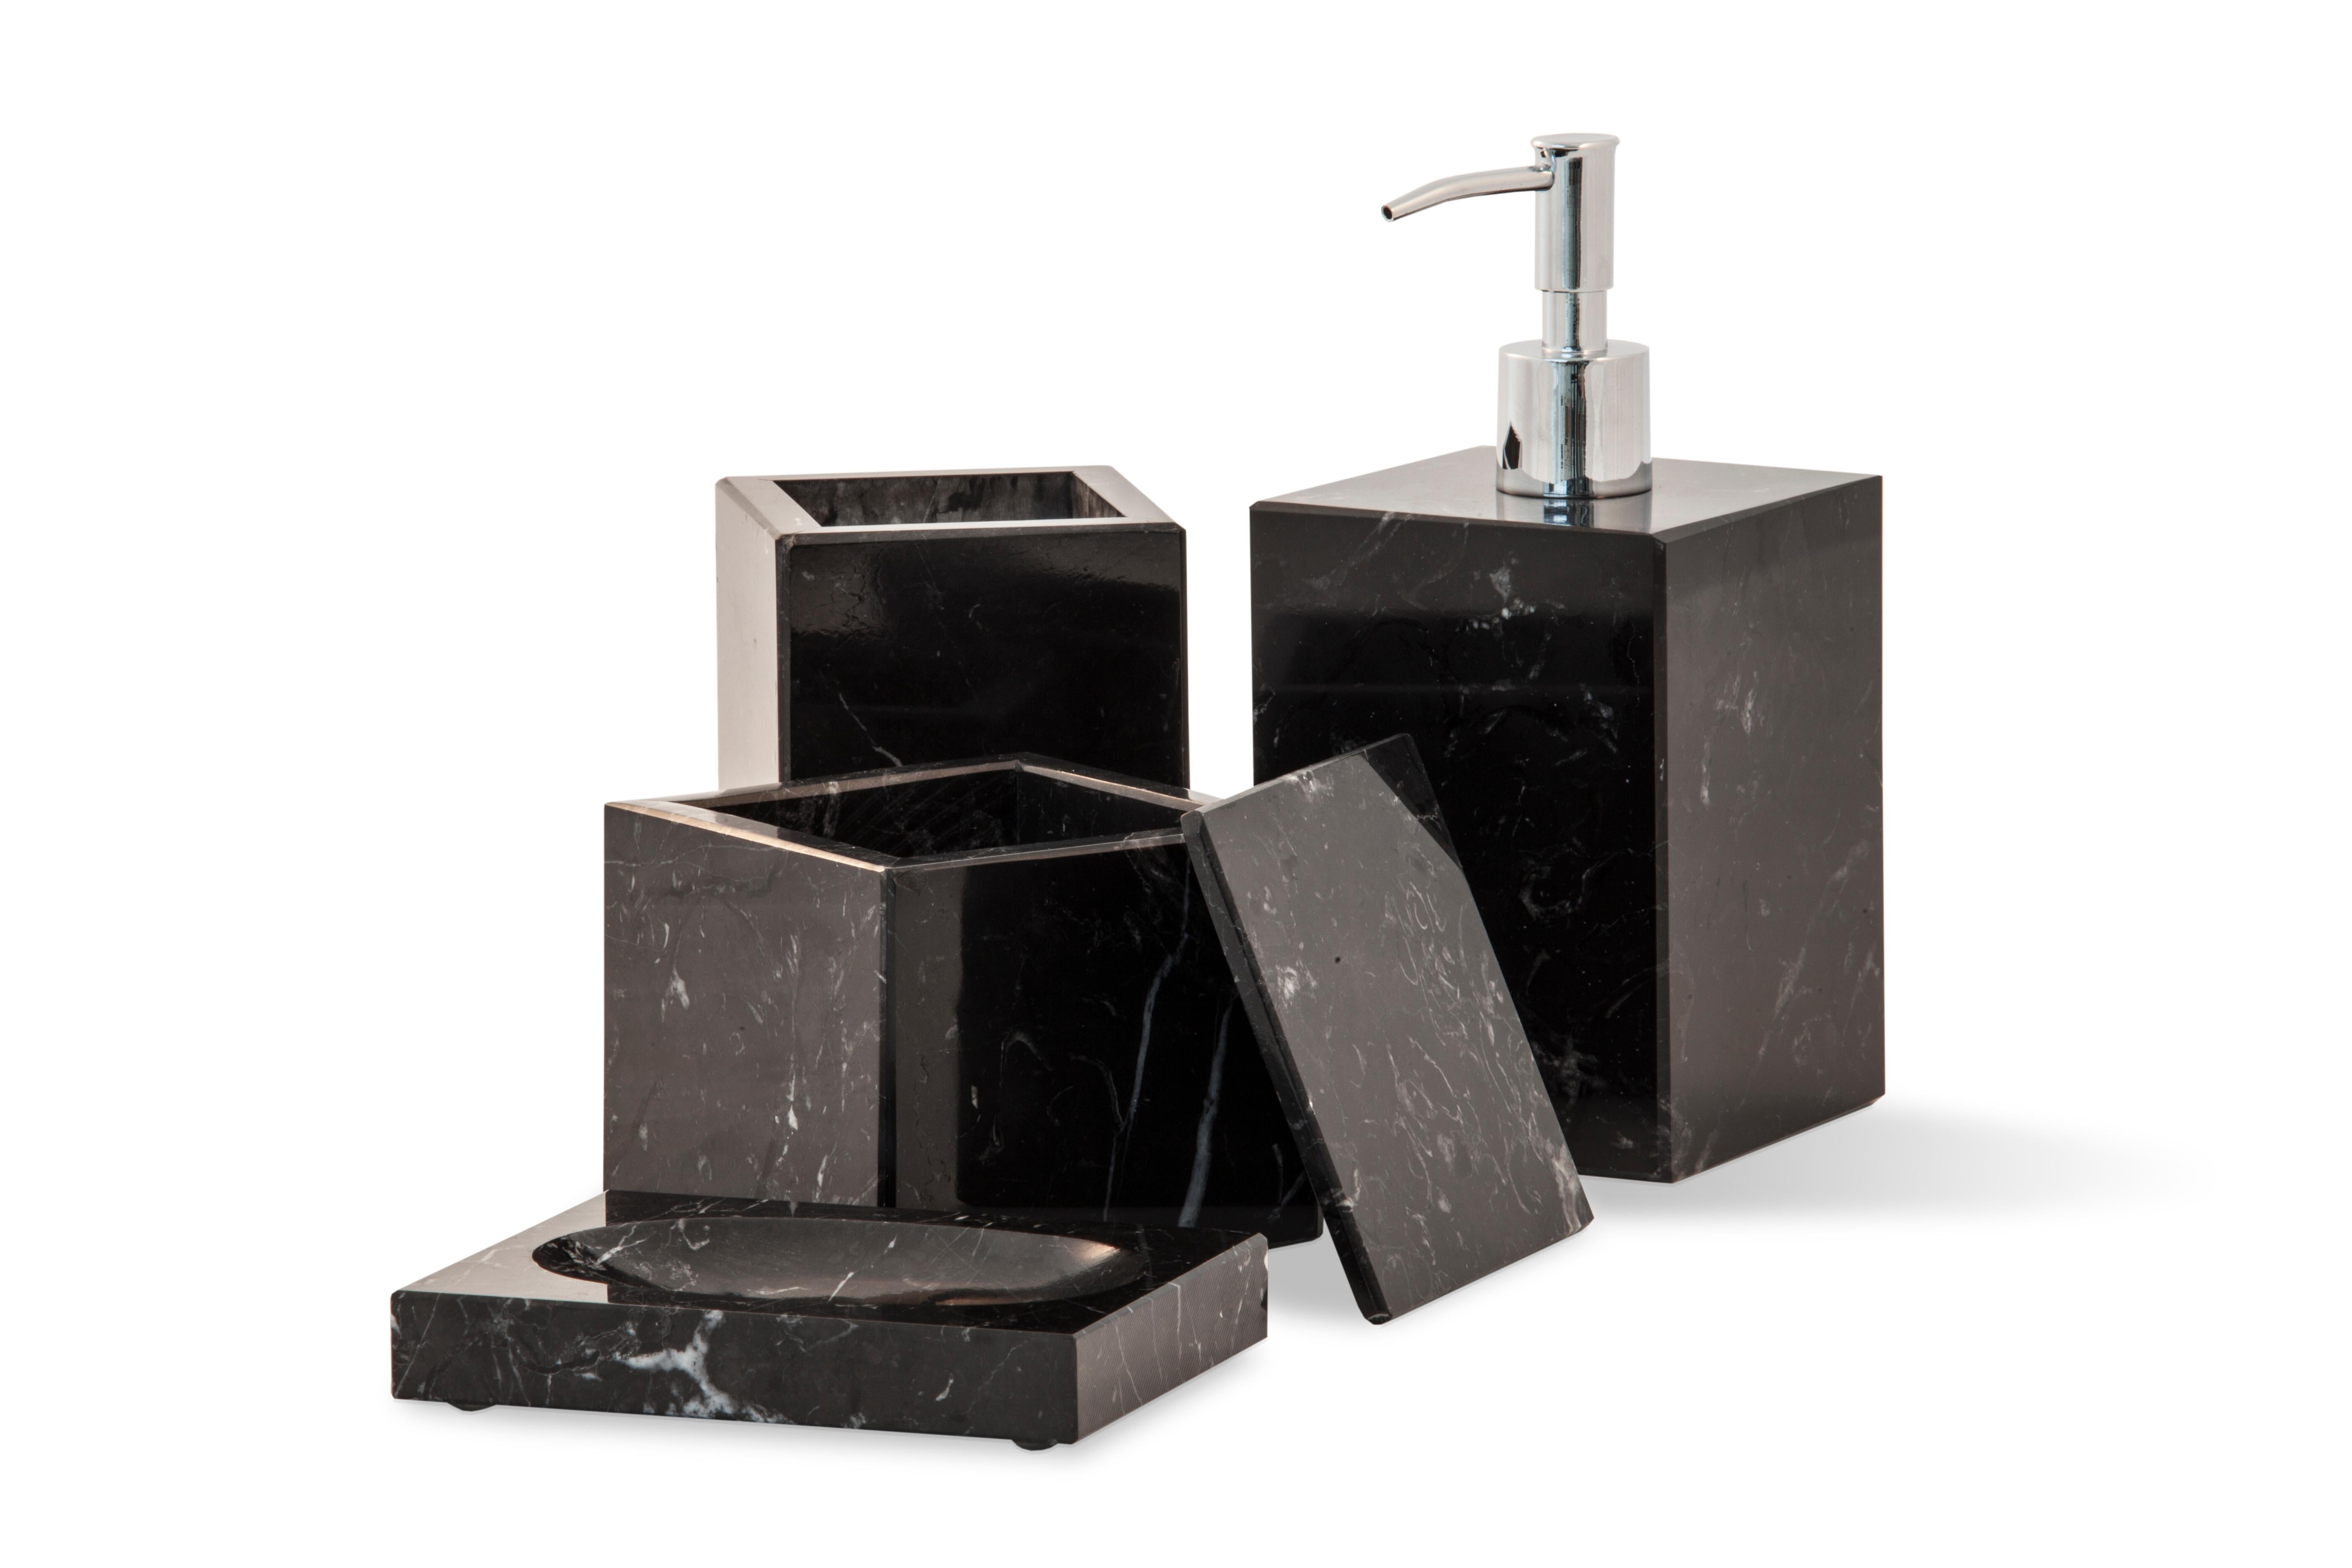 Distributeur de savon de forme carrée en marbre noir Marquina avec pompe distributrice en acier inoxydable.
Chaque pièce est en quelque sorte unique (puisque chaque bloc de marbre est différent par ses veines et ses nuances) et fabriquée à la main